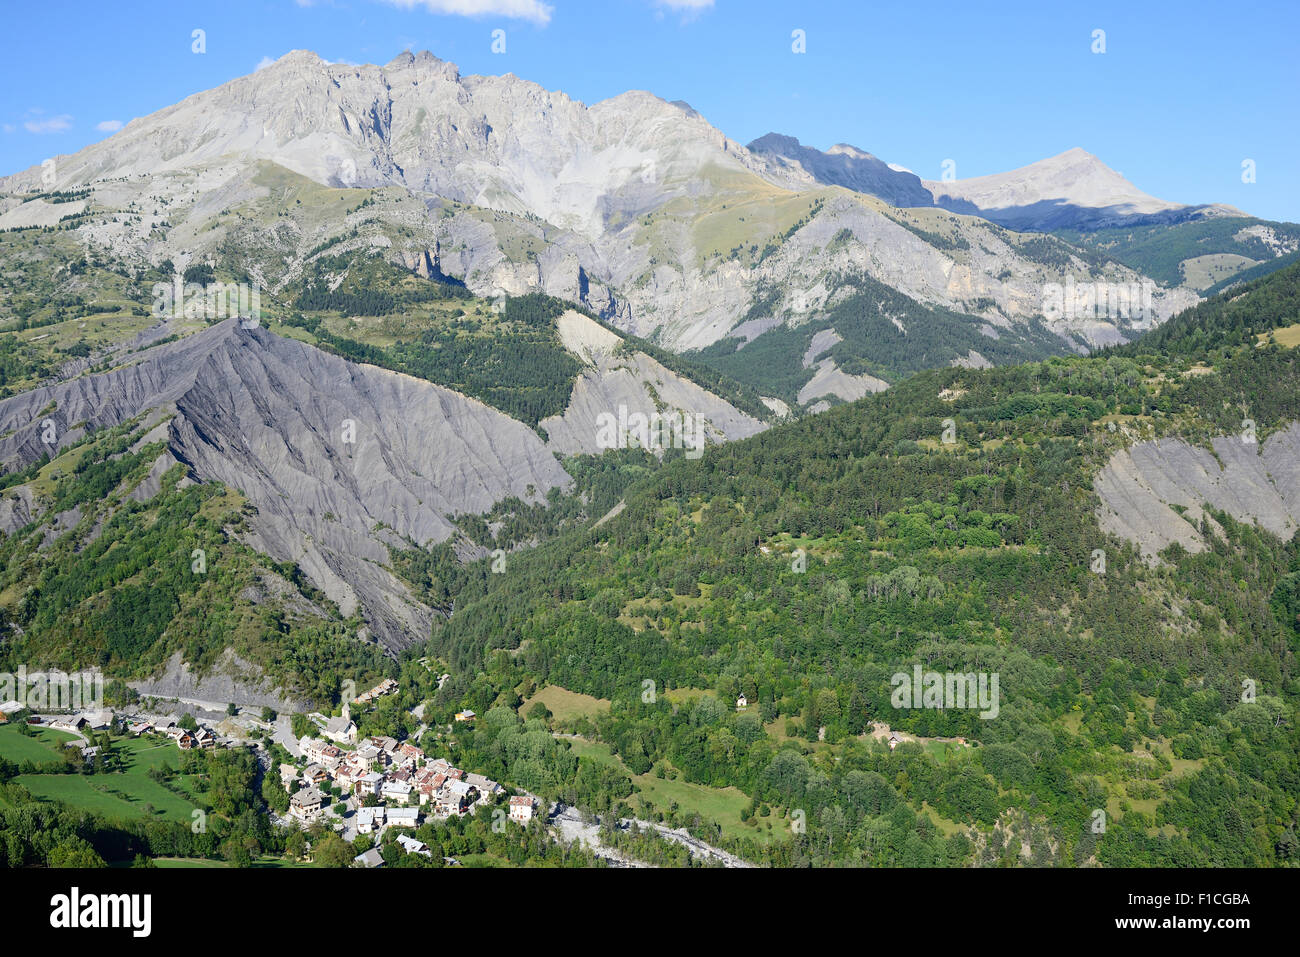 Abgelegenes mittelalterliches Dorf in einer dramatischen Landschaft. Dorf Entraunes (1250m m ü.d.M.) und Roche Grande Peak (2751m m ü.d.M.), Alpes-Maritimes, Frankreich. Stockfoto